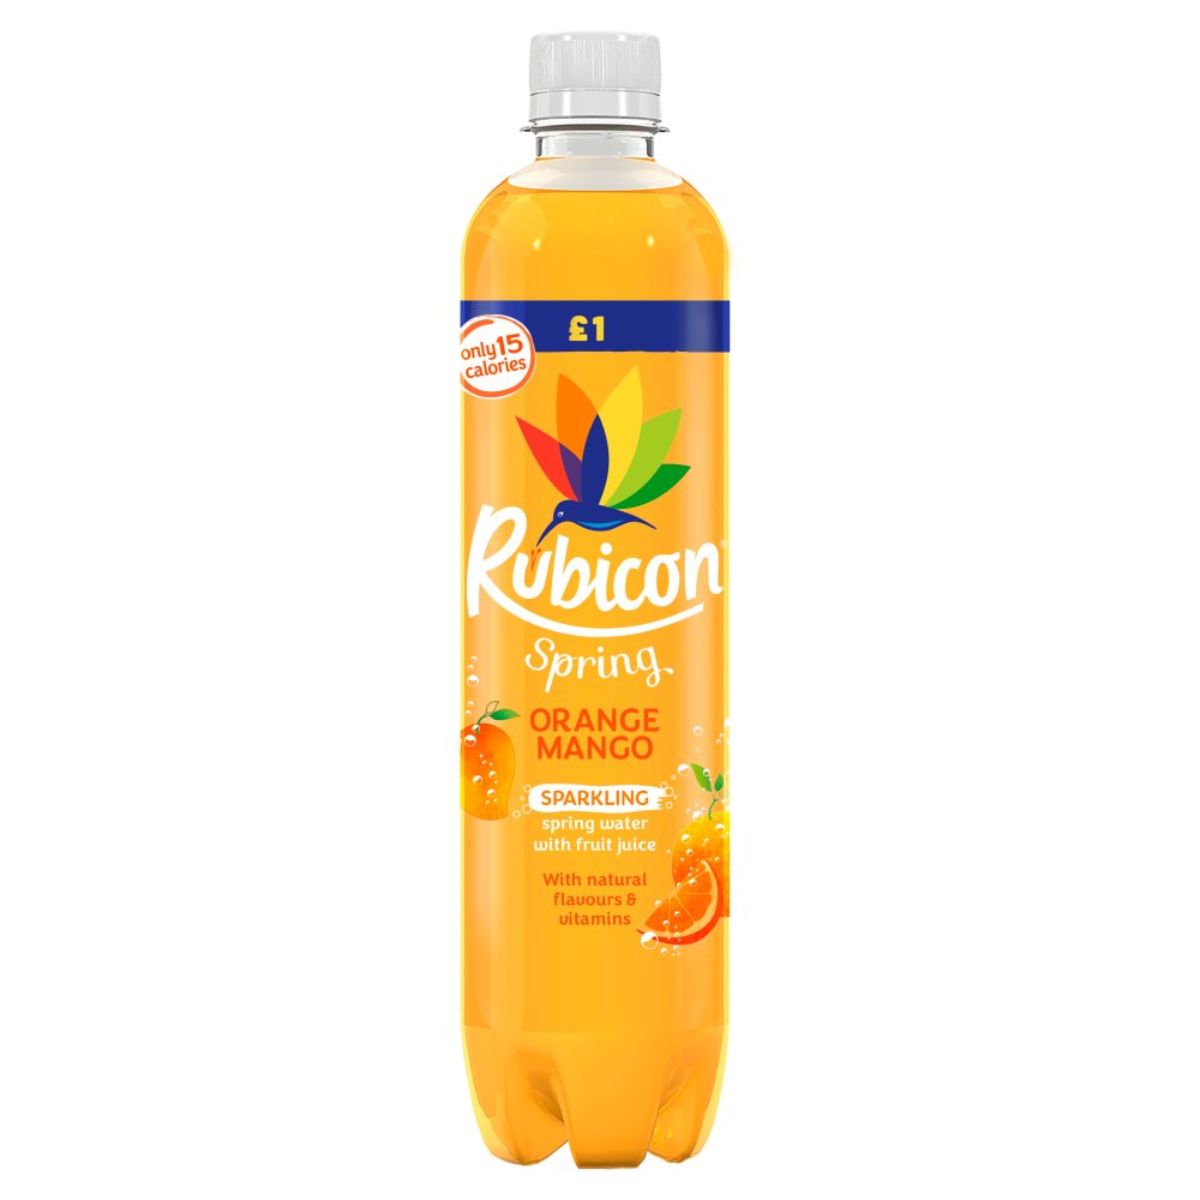 A bottle of Rubicon - Spring Orange & Mango - 500ml on a white background.